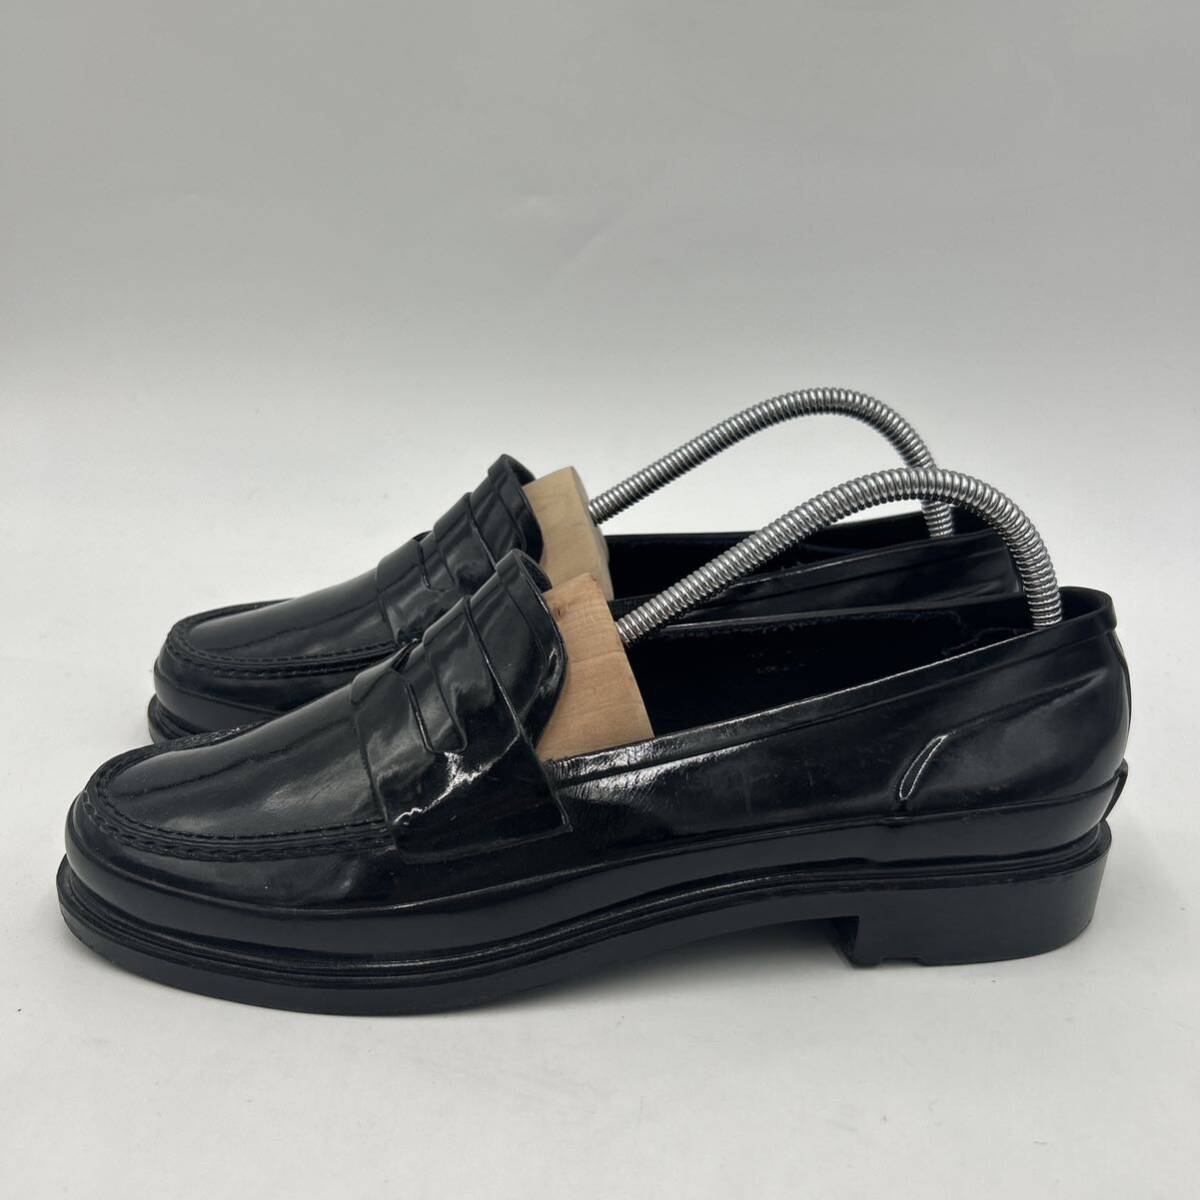 E # надеть обувь ощущение выдающийся \' совершенно водонепроницаемый \' HUNTER Hunter Raver материалы монета Loafer UK6 25cm унисекс для мужчин и женщин обувь BLACK чёрный серия 